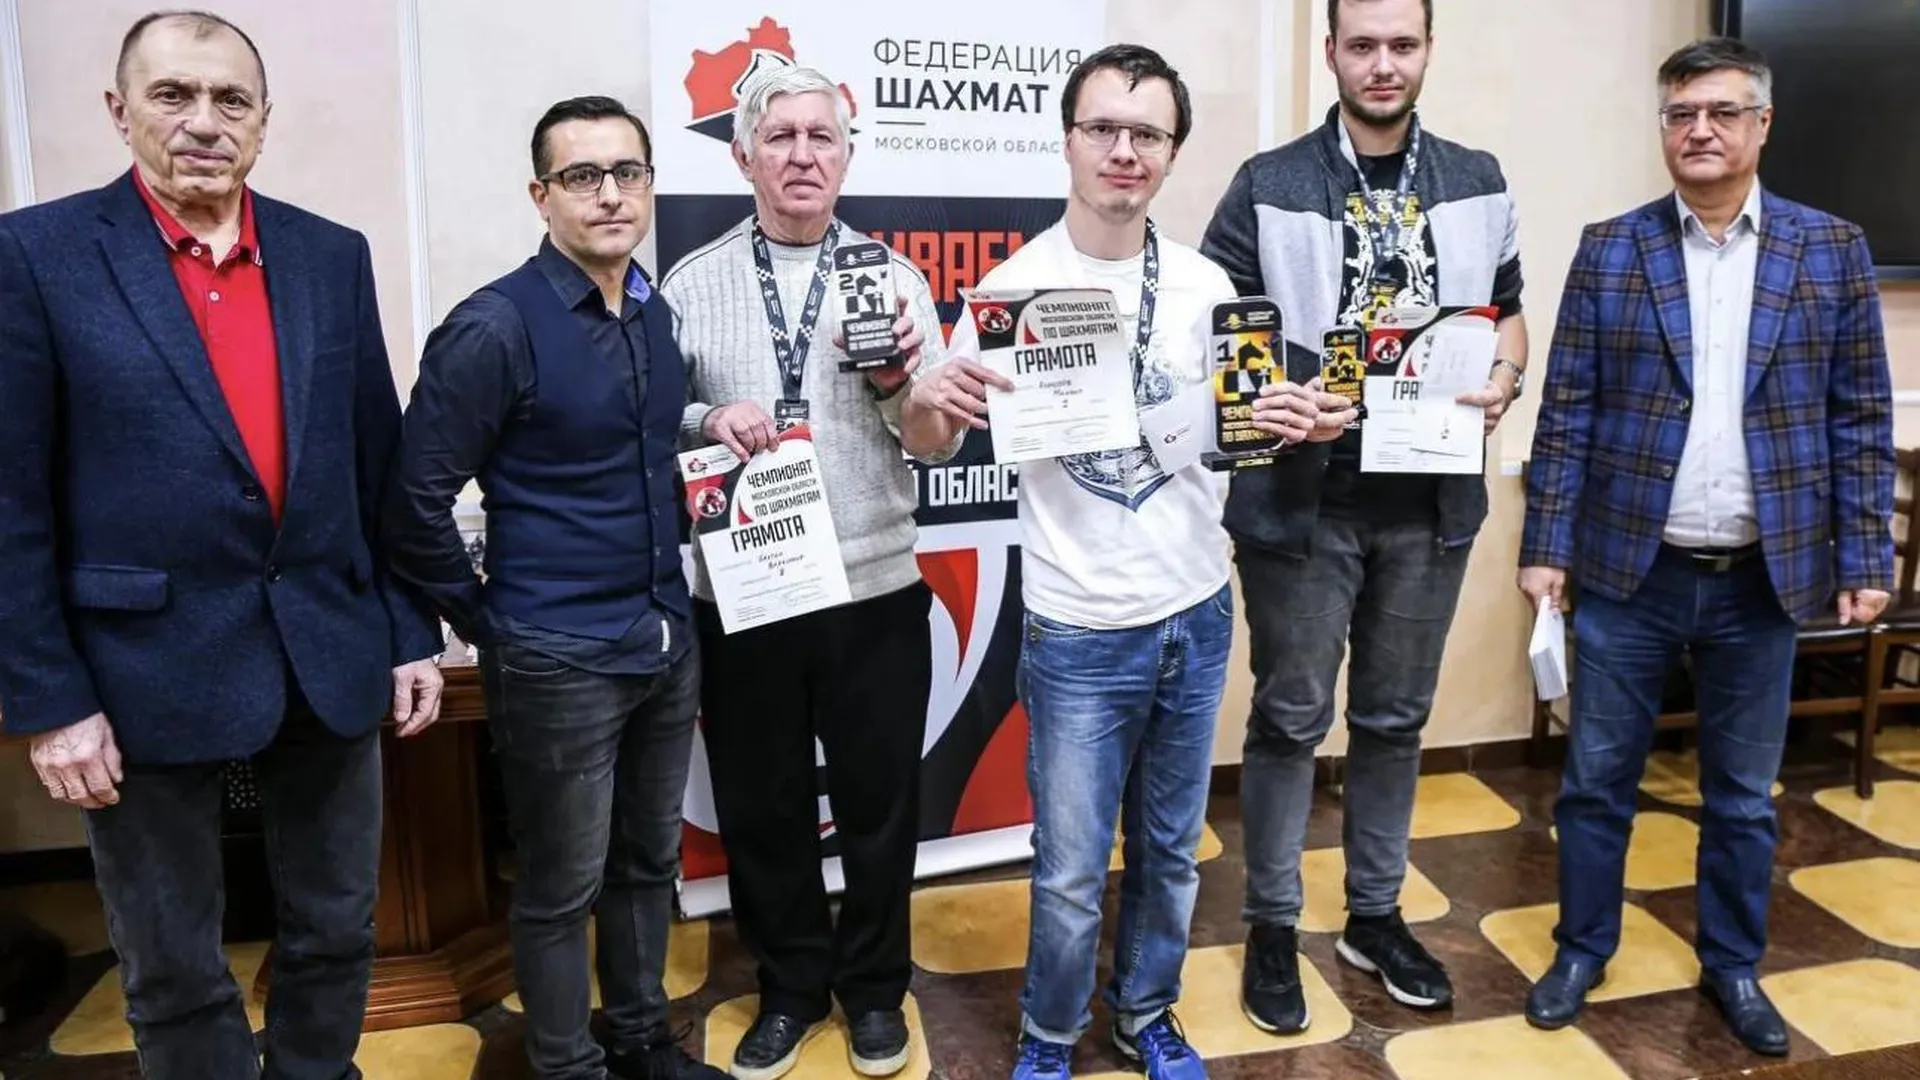 Шахматист из городского округа Химки стал призером областного чемпионата